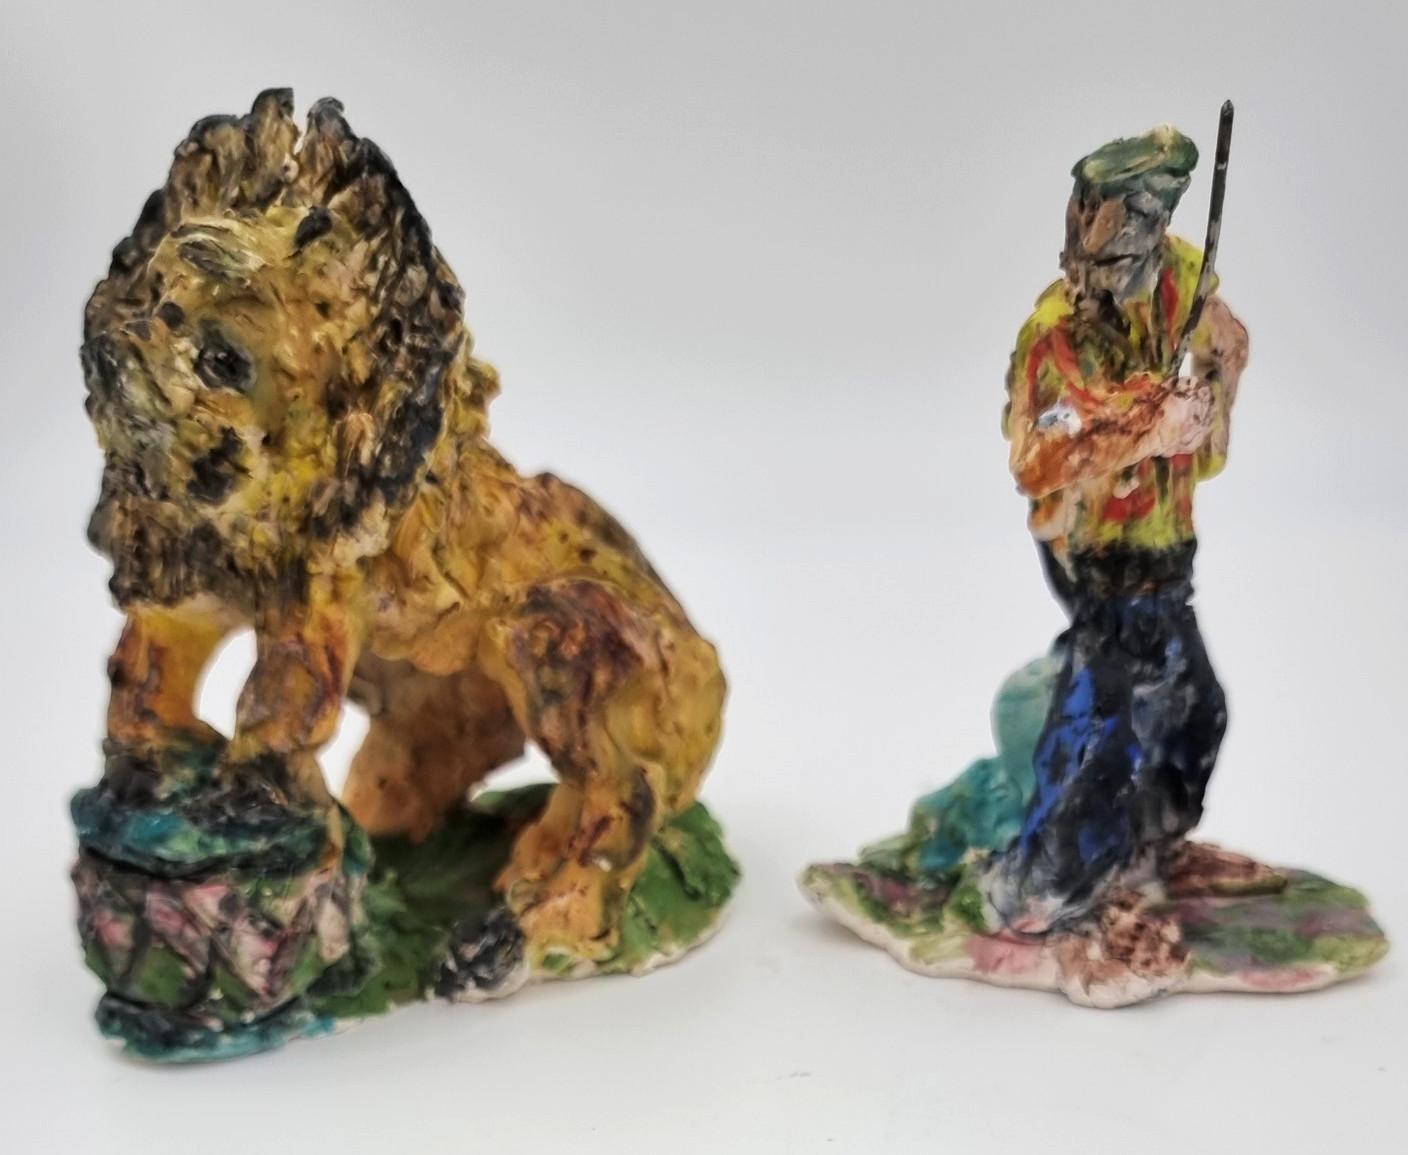 Lion and Lion Tamer (Circus, Cirque du Soleil, The Ringling, Barnum & Bailey) - Modern Sculpture by Ann Rothman